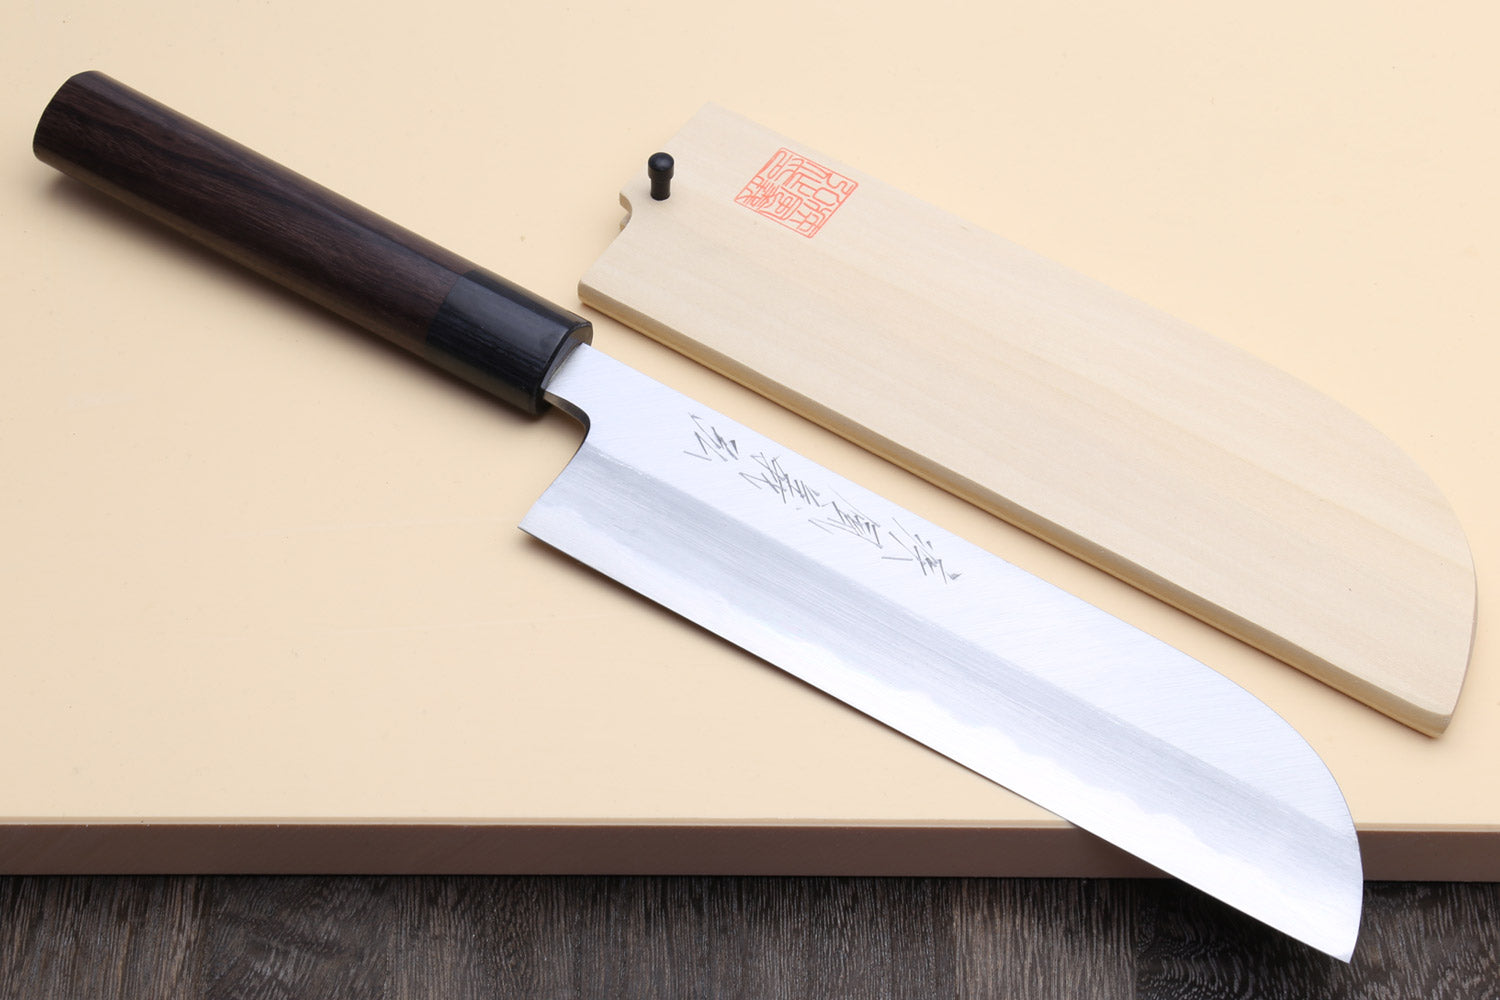 Kikusumi GHOST Kama Usuba Vegetable Knife - G3 Super Steel